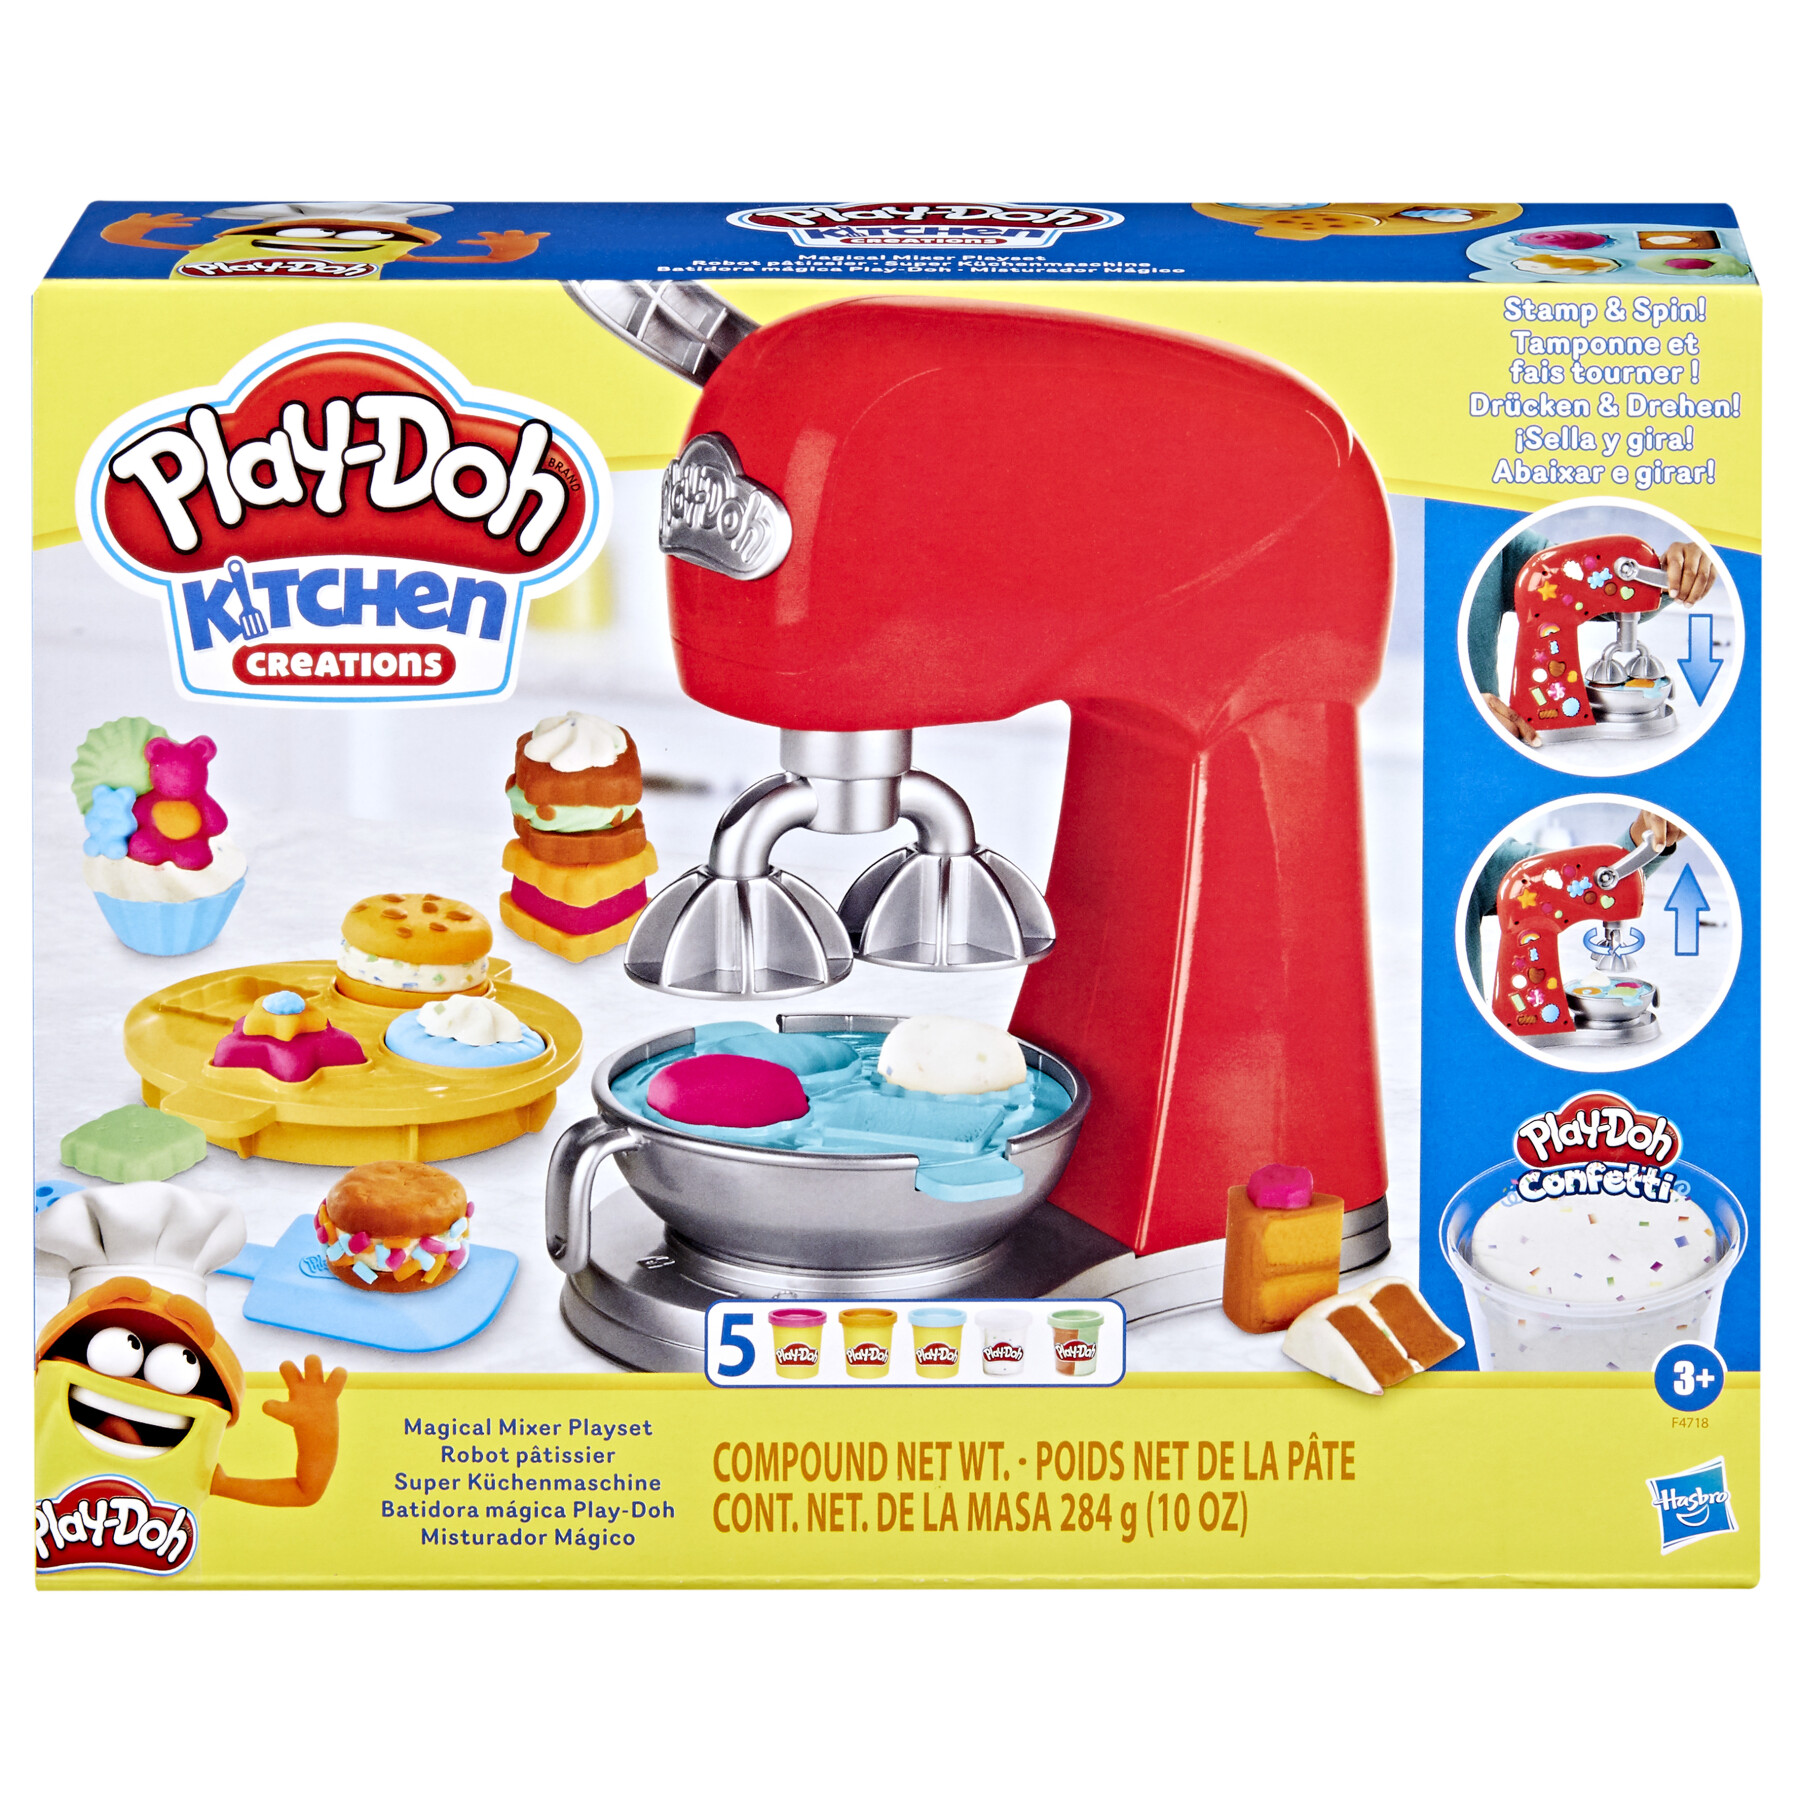 Play-doh kitchen creations - il magico mixer, impastatrice giocattolo con finti accessori da cucina - PLAY-DOH